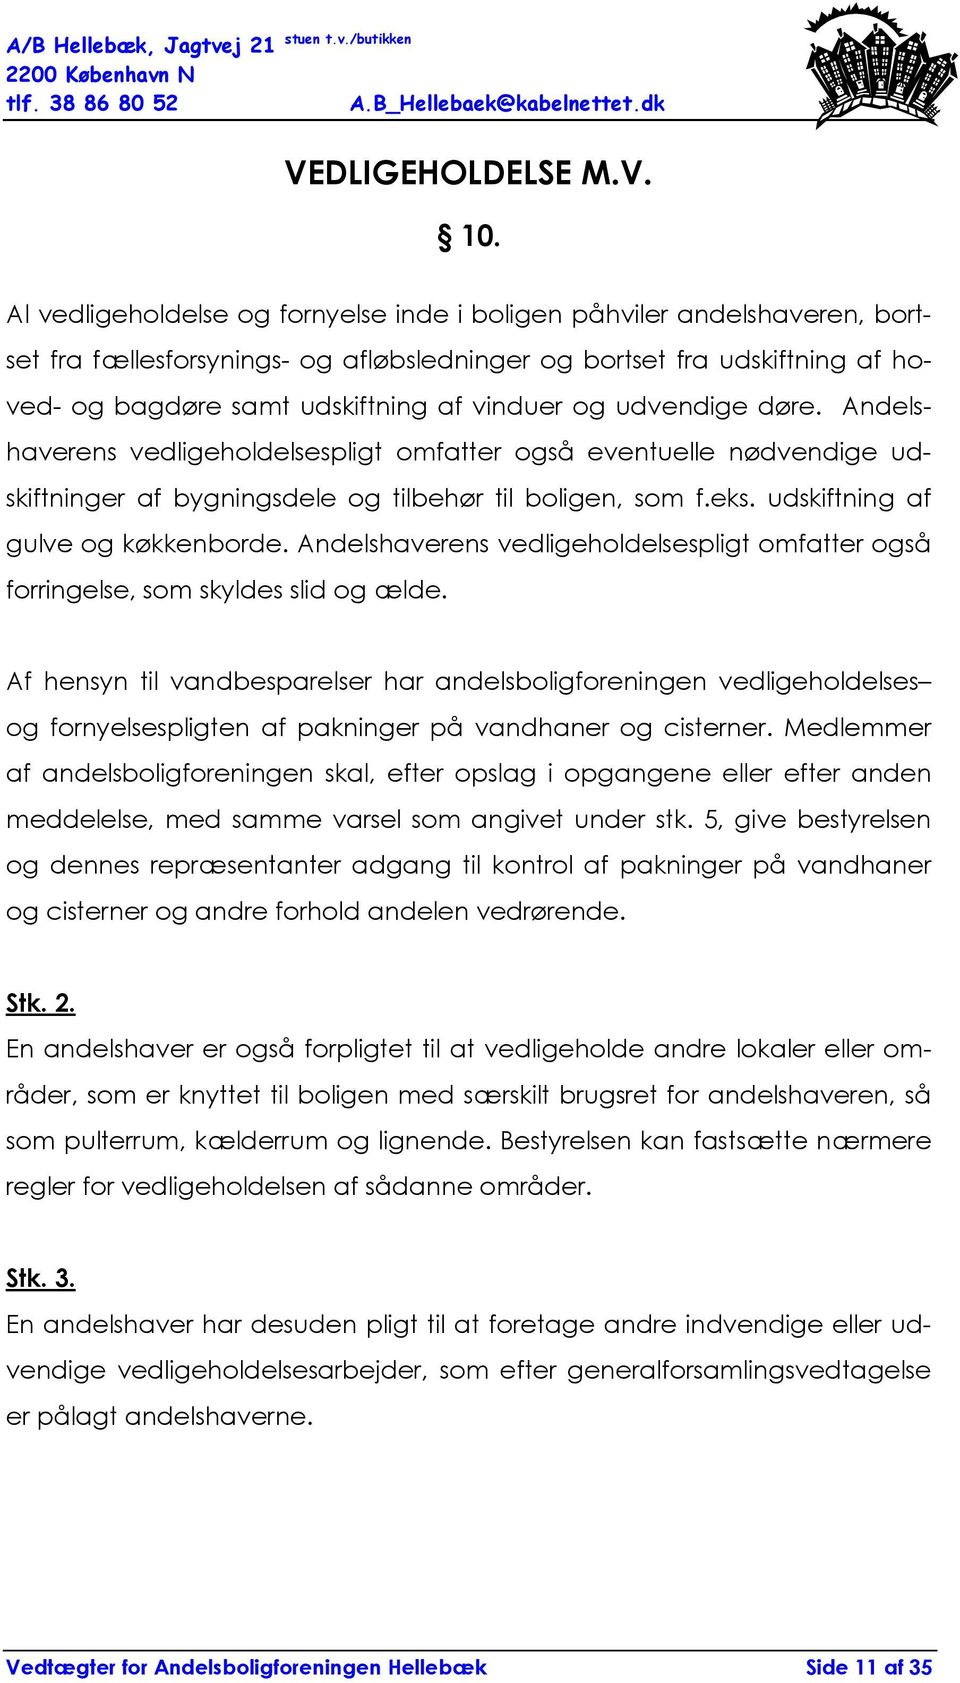 VEDTÆGTER FOR ANDELSBOLIGFORENINGEN HELLEBÆK - PDF Free Download